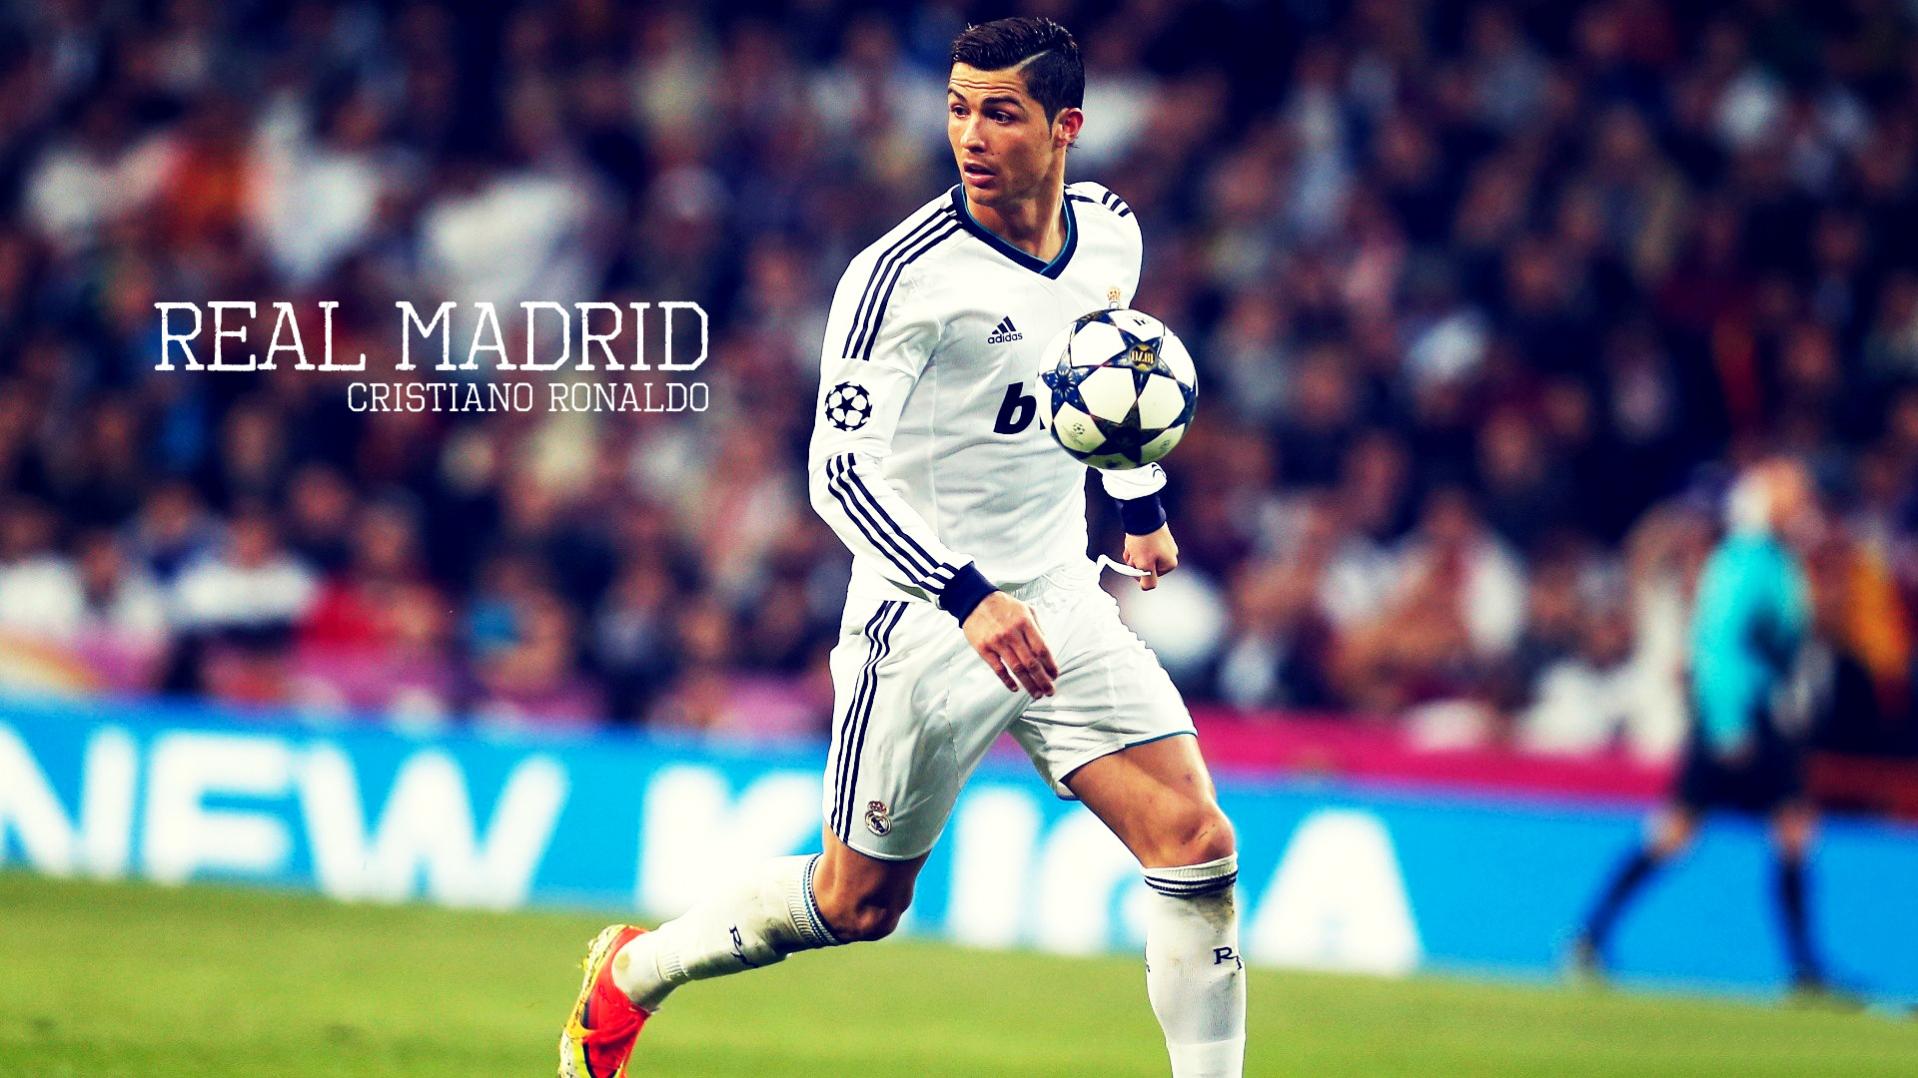 Cristiano Ronaldo Wallpaper 2015 Wallpapers Free - Kemecer.com